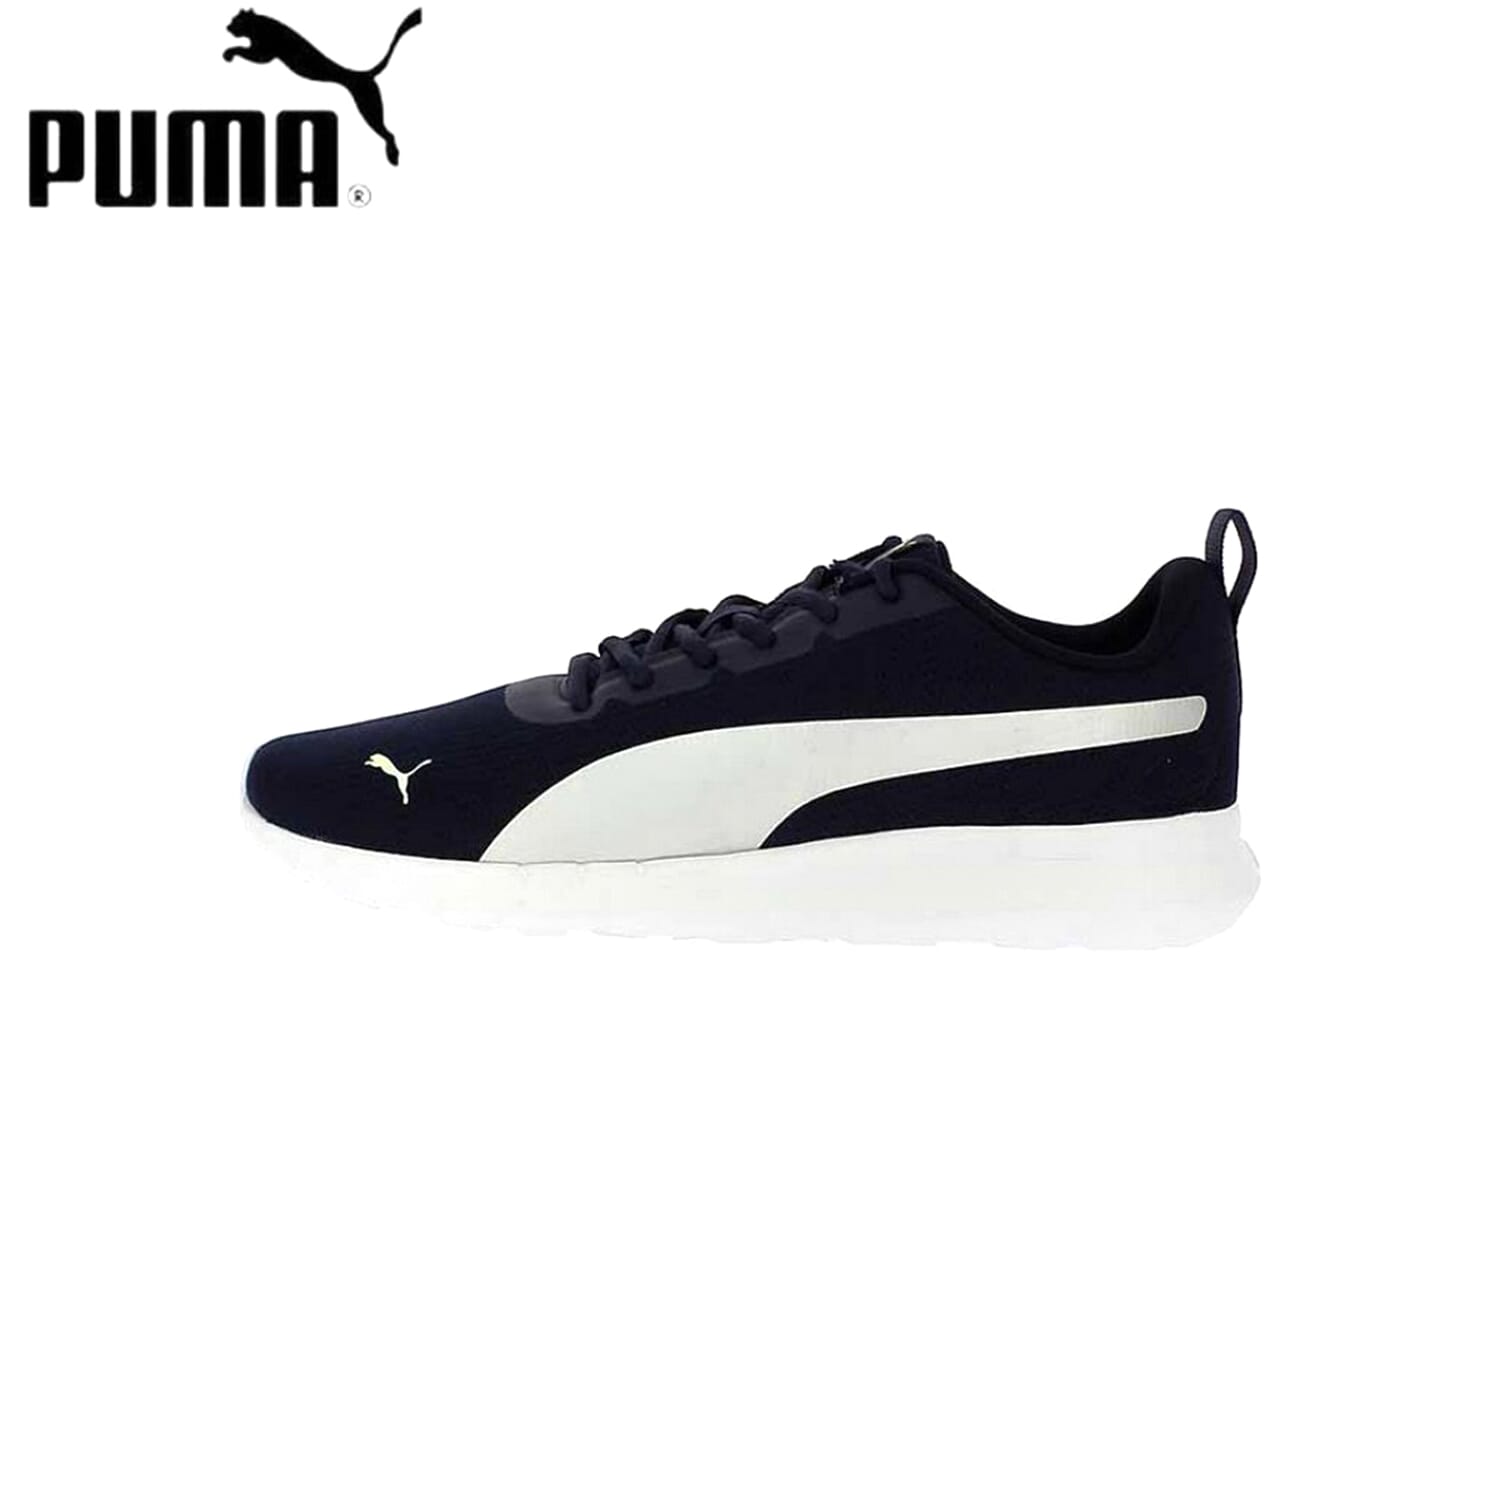 Puma Nepal: Puma Official Store at Daraz.com.np